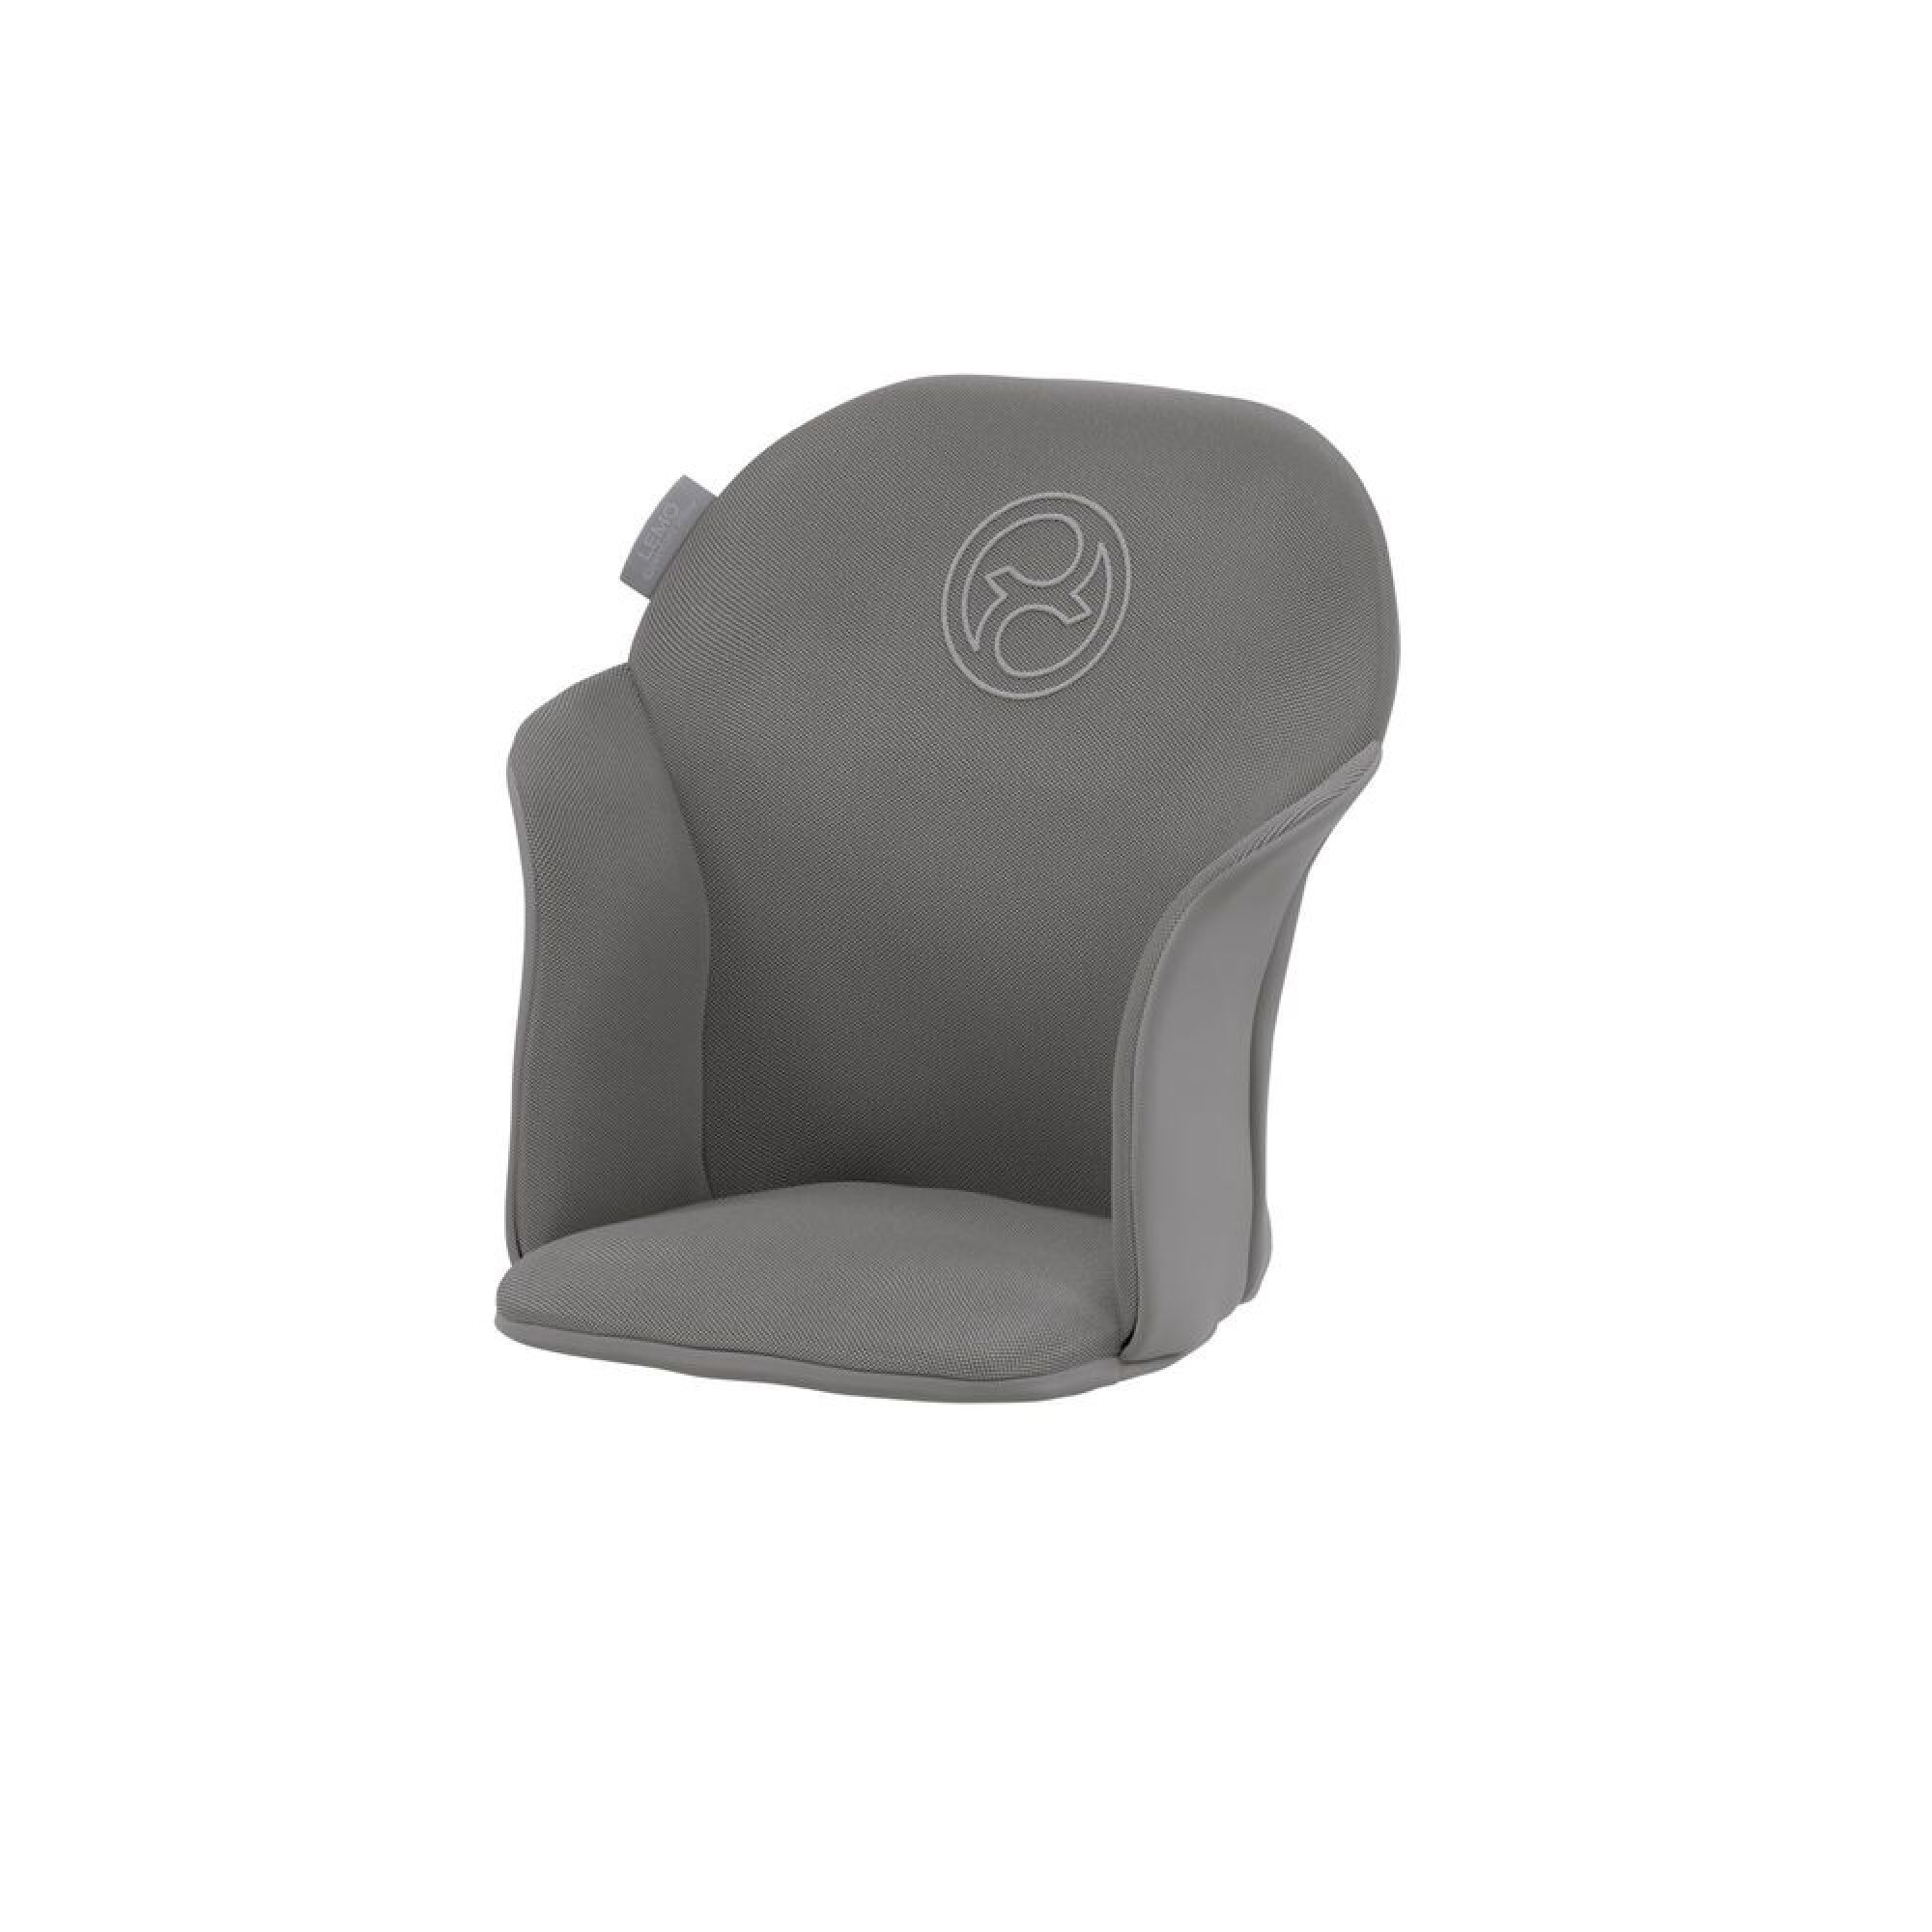 Coussin de confort pour chaise haute bébé enfant gamme ptit - gris